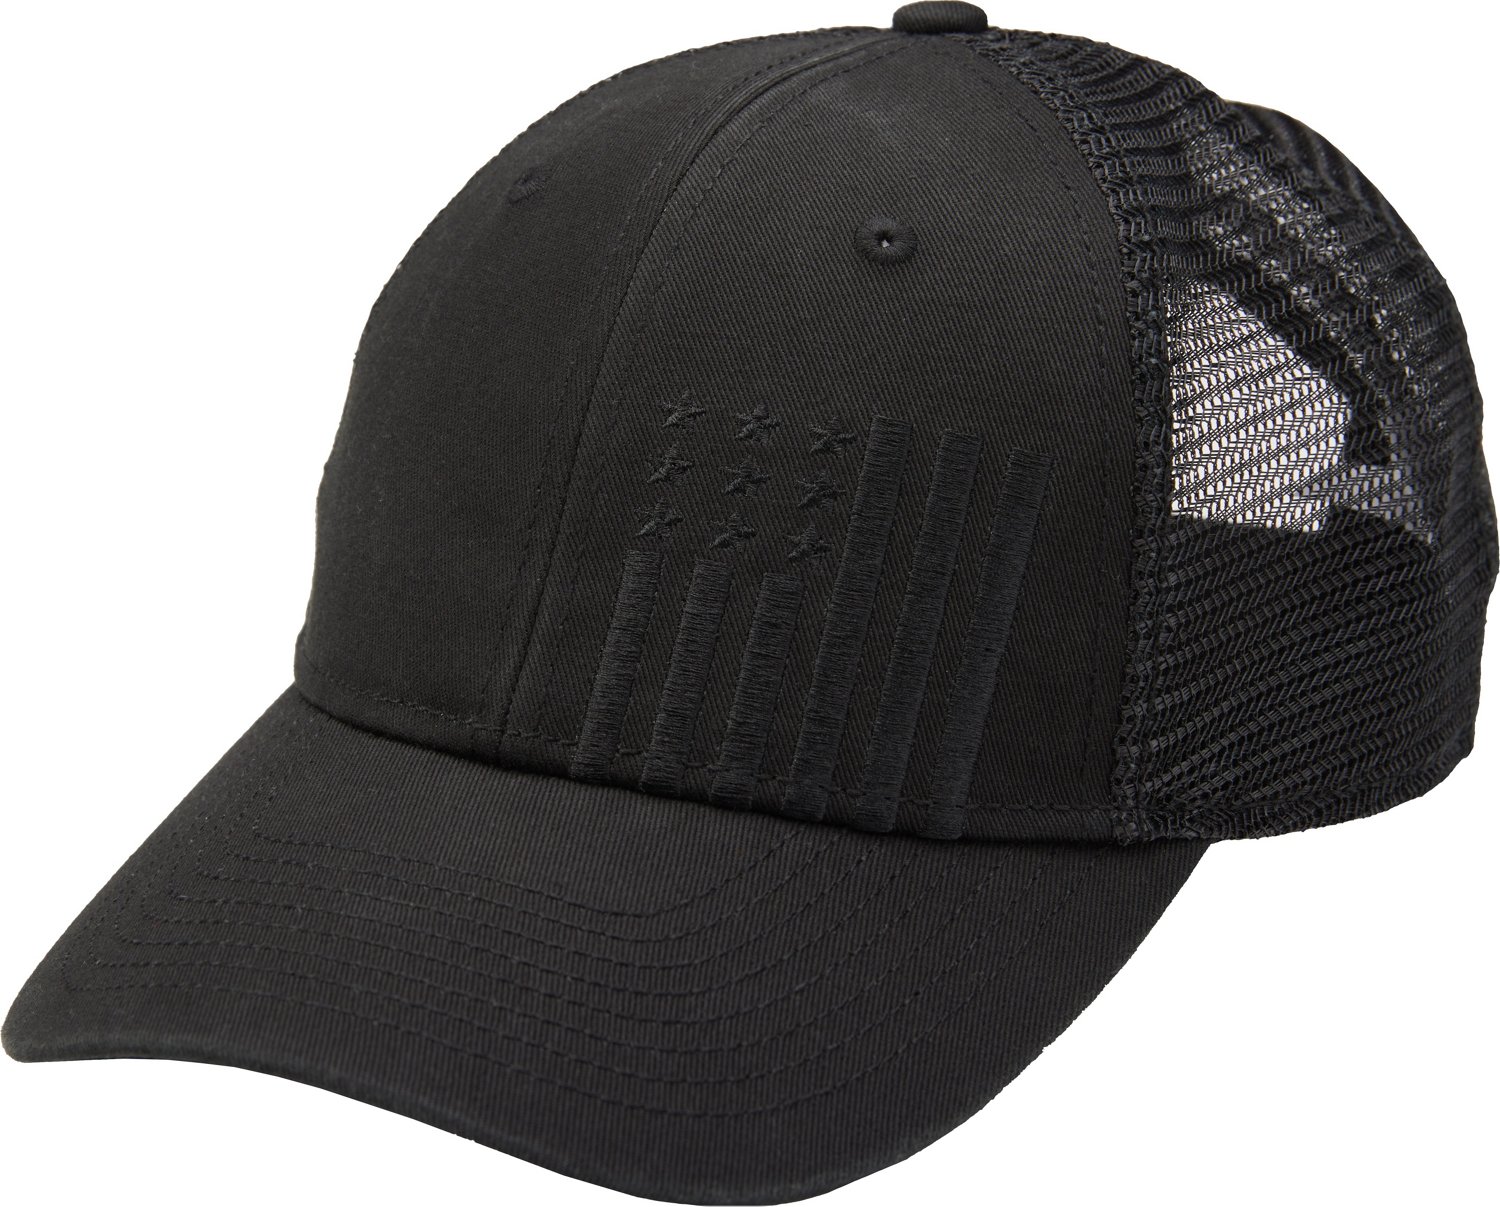 Men's Grey Trucker Hats: Browse 16 Brands